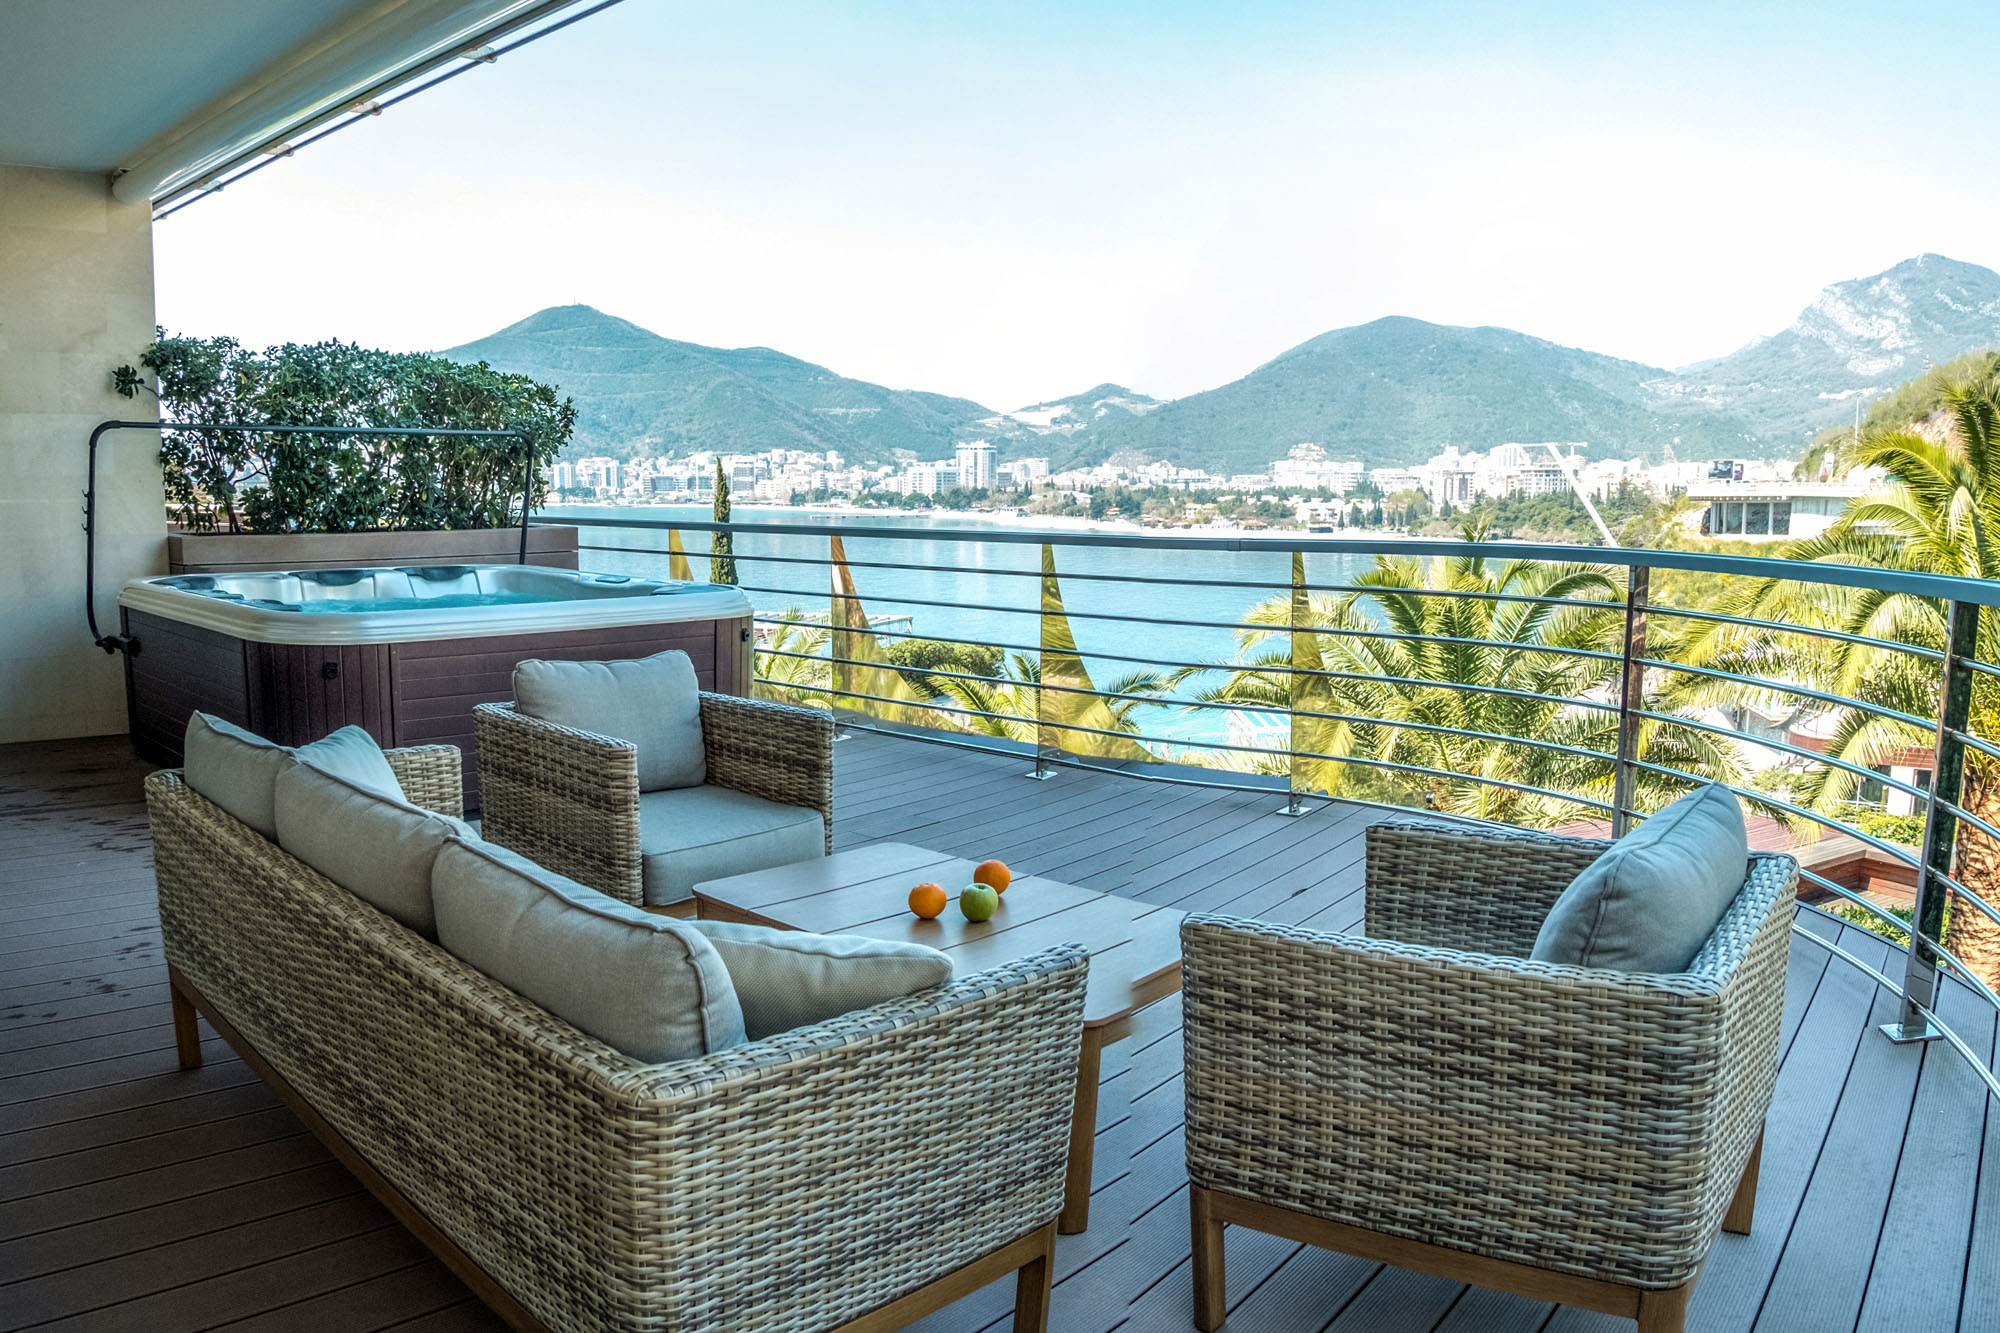 5.dukley-hotel-luxury-hotels-montenegro-budva-best-hotels-in-montenegro_10-05-2020-220947.jpg